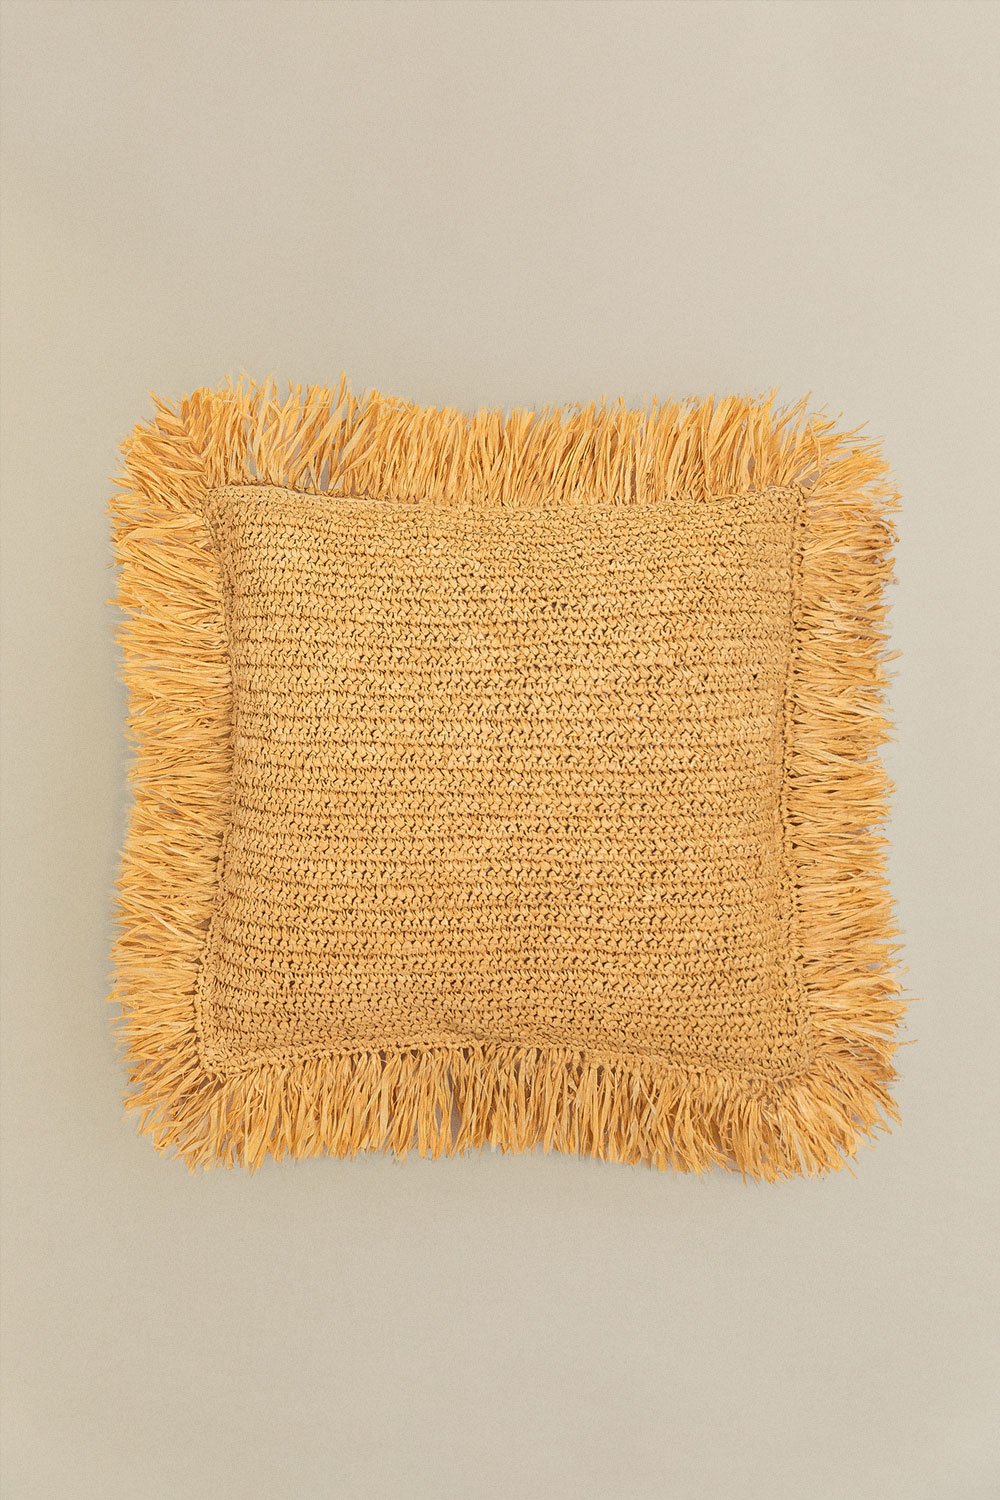 Vierkant gevlochten raffia kussen (45x45 cm) Doncka, galerij beeld 1